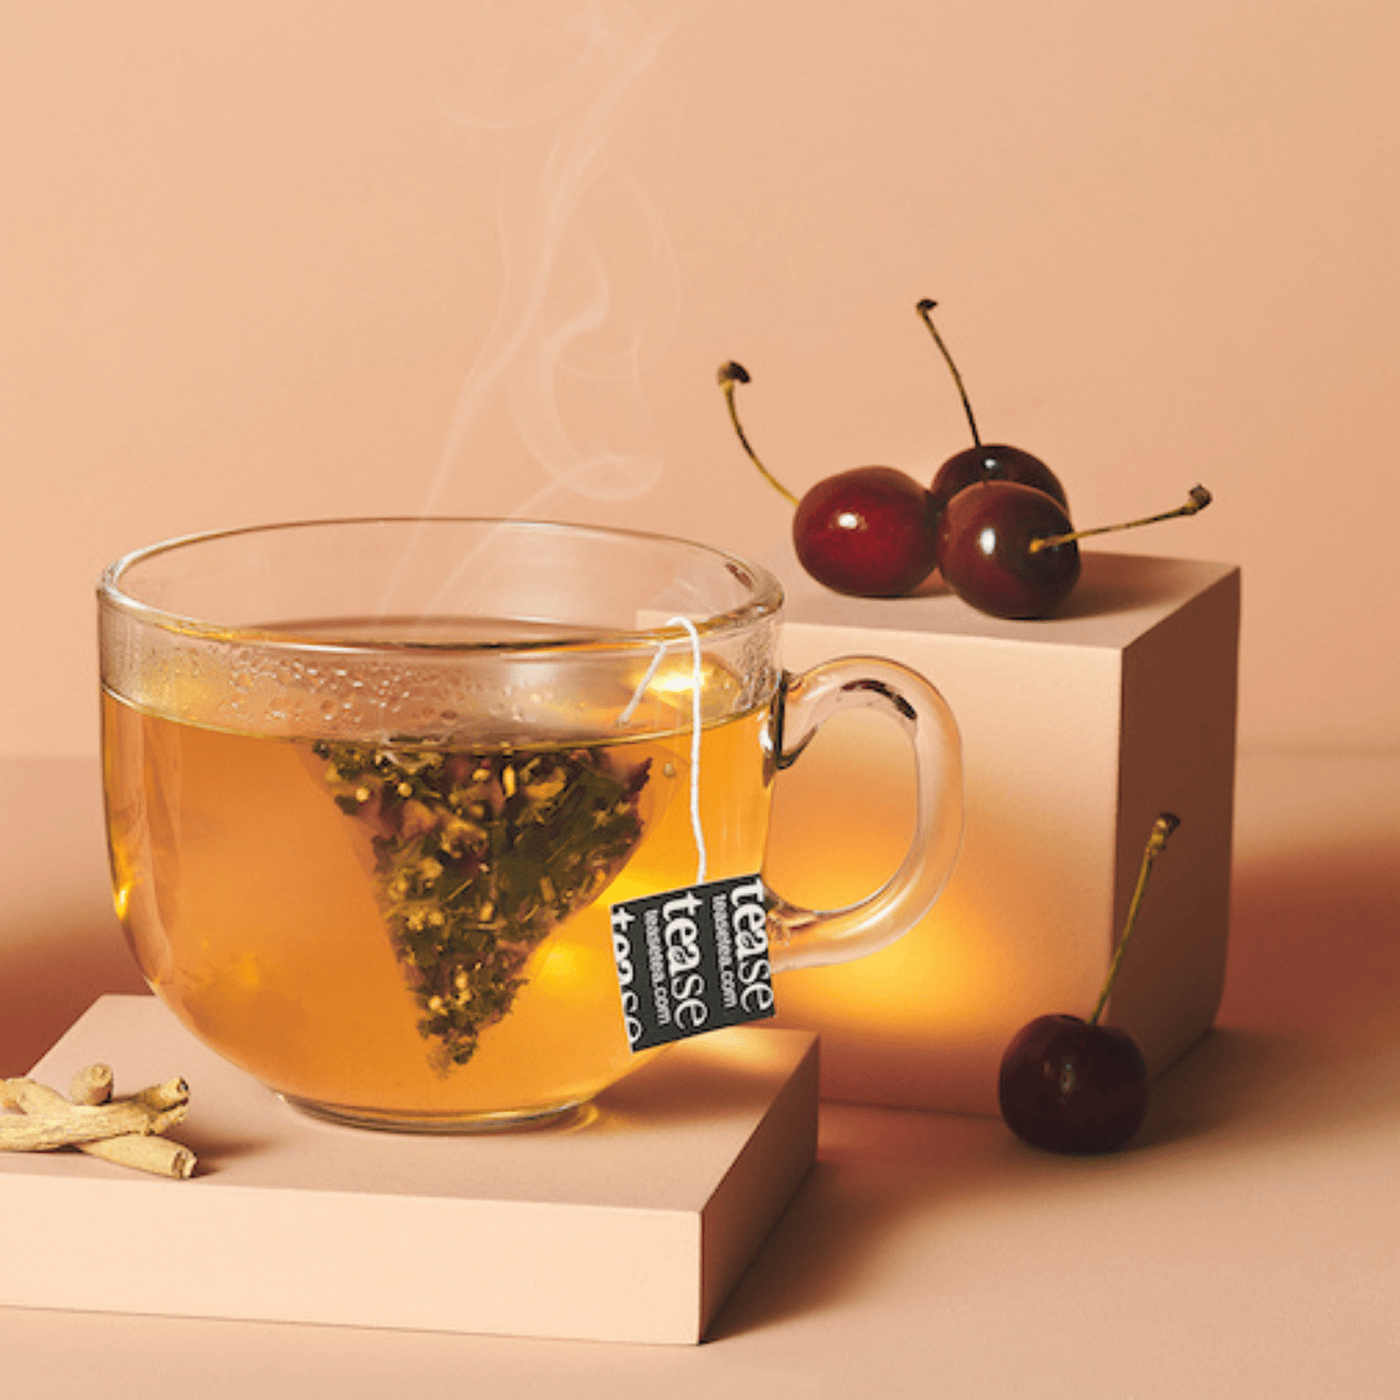 Tease Tea tube-refill > wellness > biodegradable > tea > ashwagandha > stress tea Chill out Cherry Refill Chill out Cherry Tea Refill | Stress Support - Tease Wellness Blends